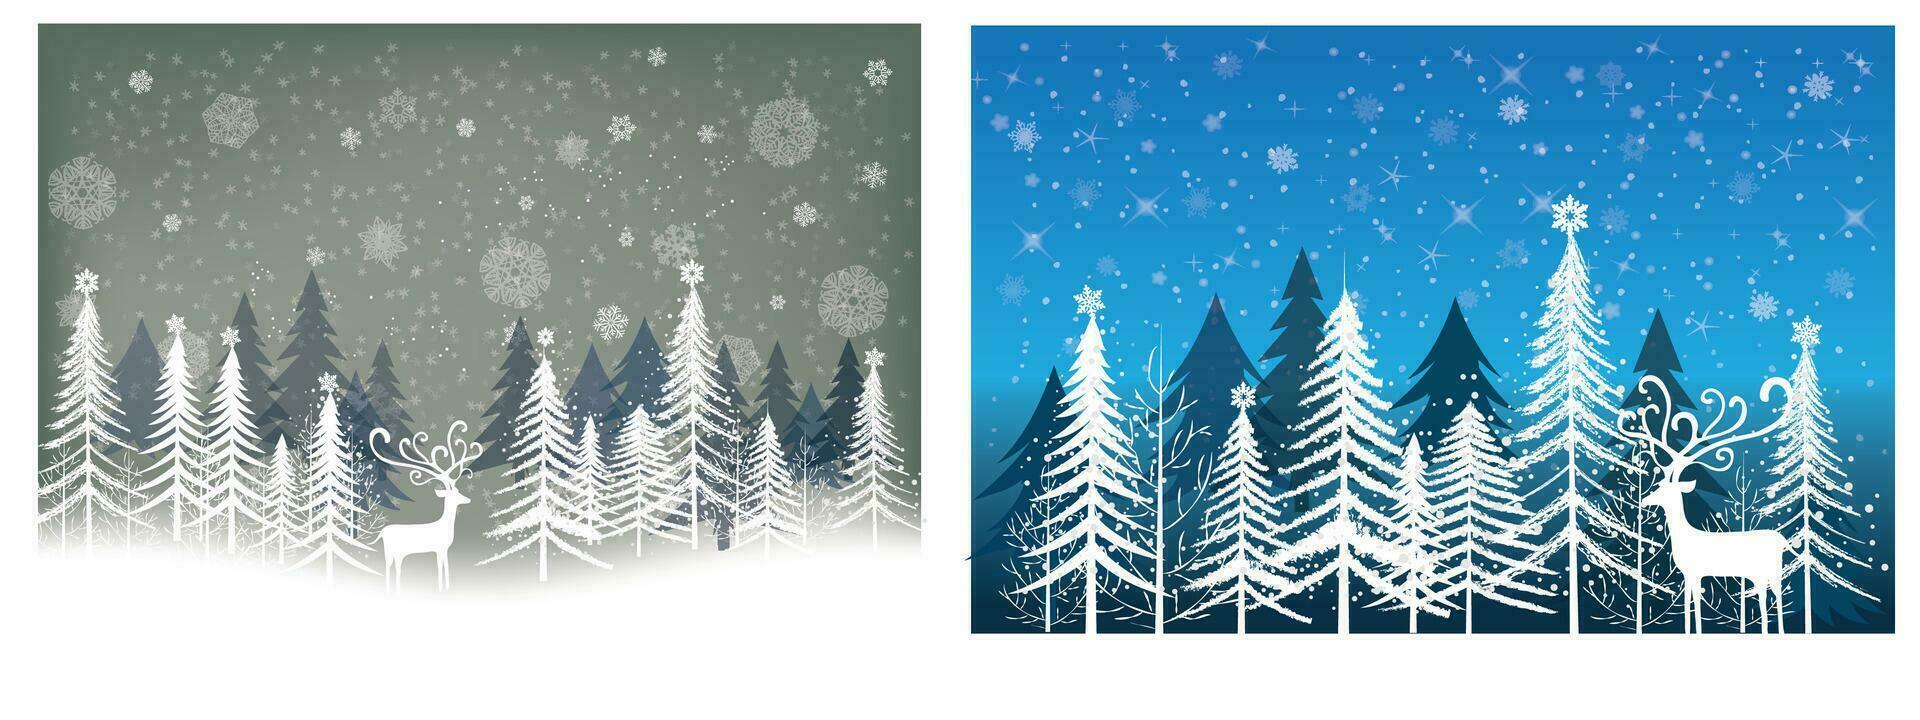 winter uitverkoop Product banier, pijnboom Woud landschap, sneeuw met wit hert, papier illustratie vector